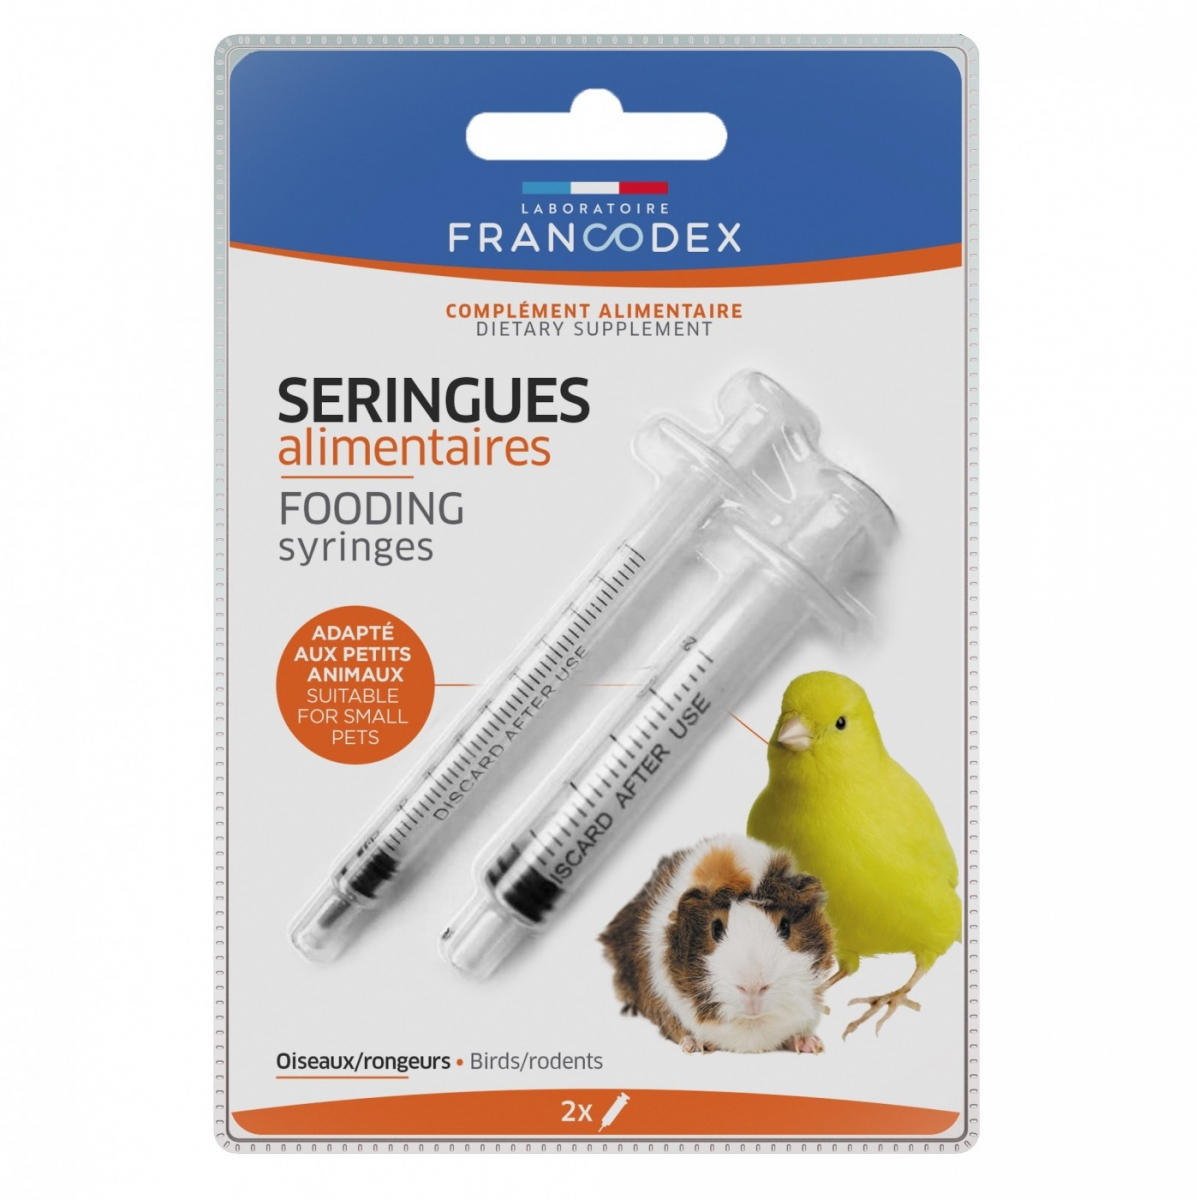 Francodex Seringues alimentaires oiseaux/rongeurs